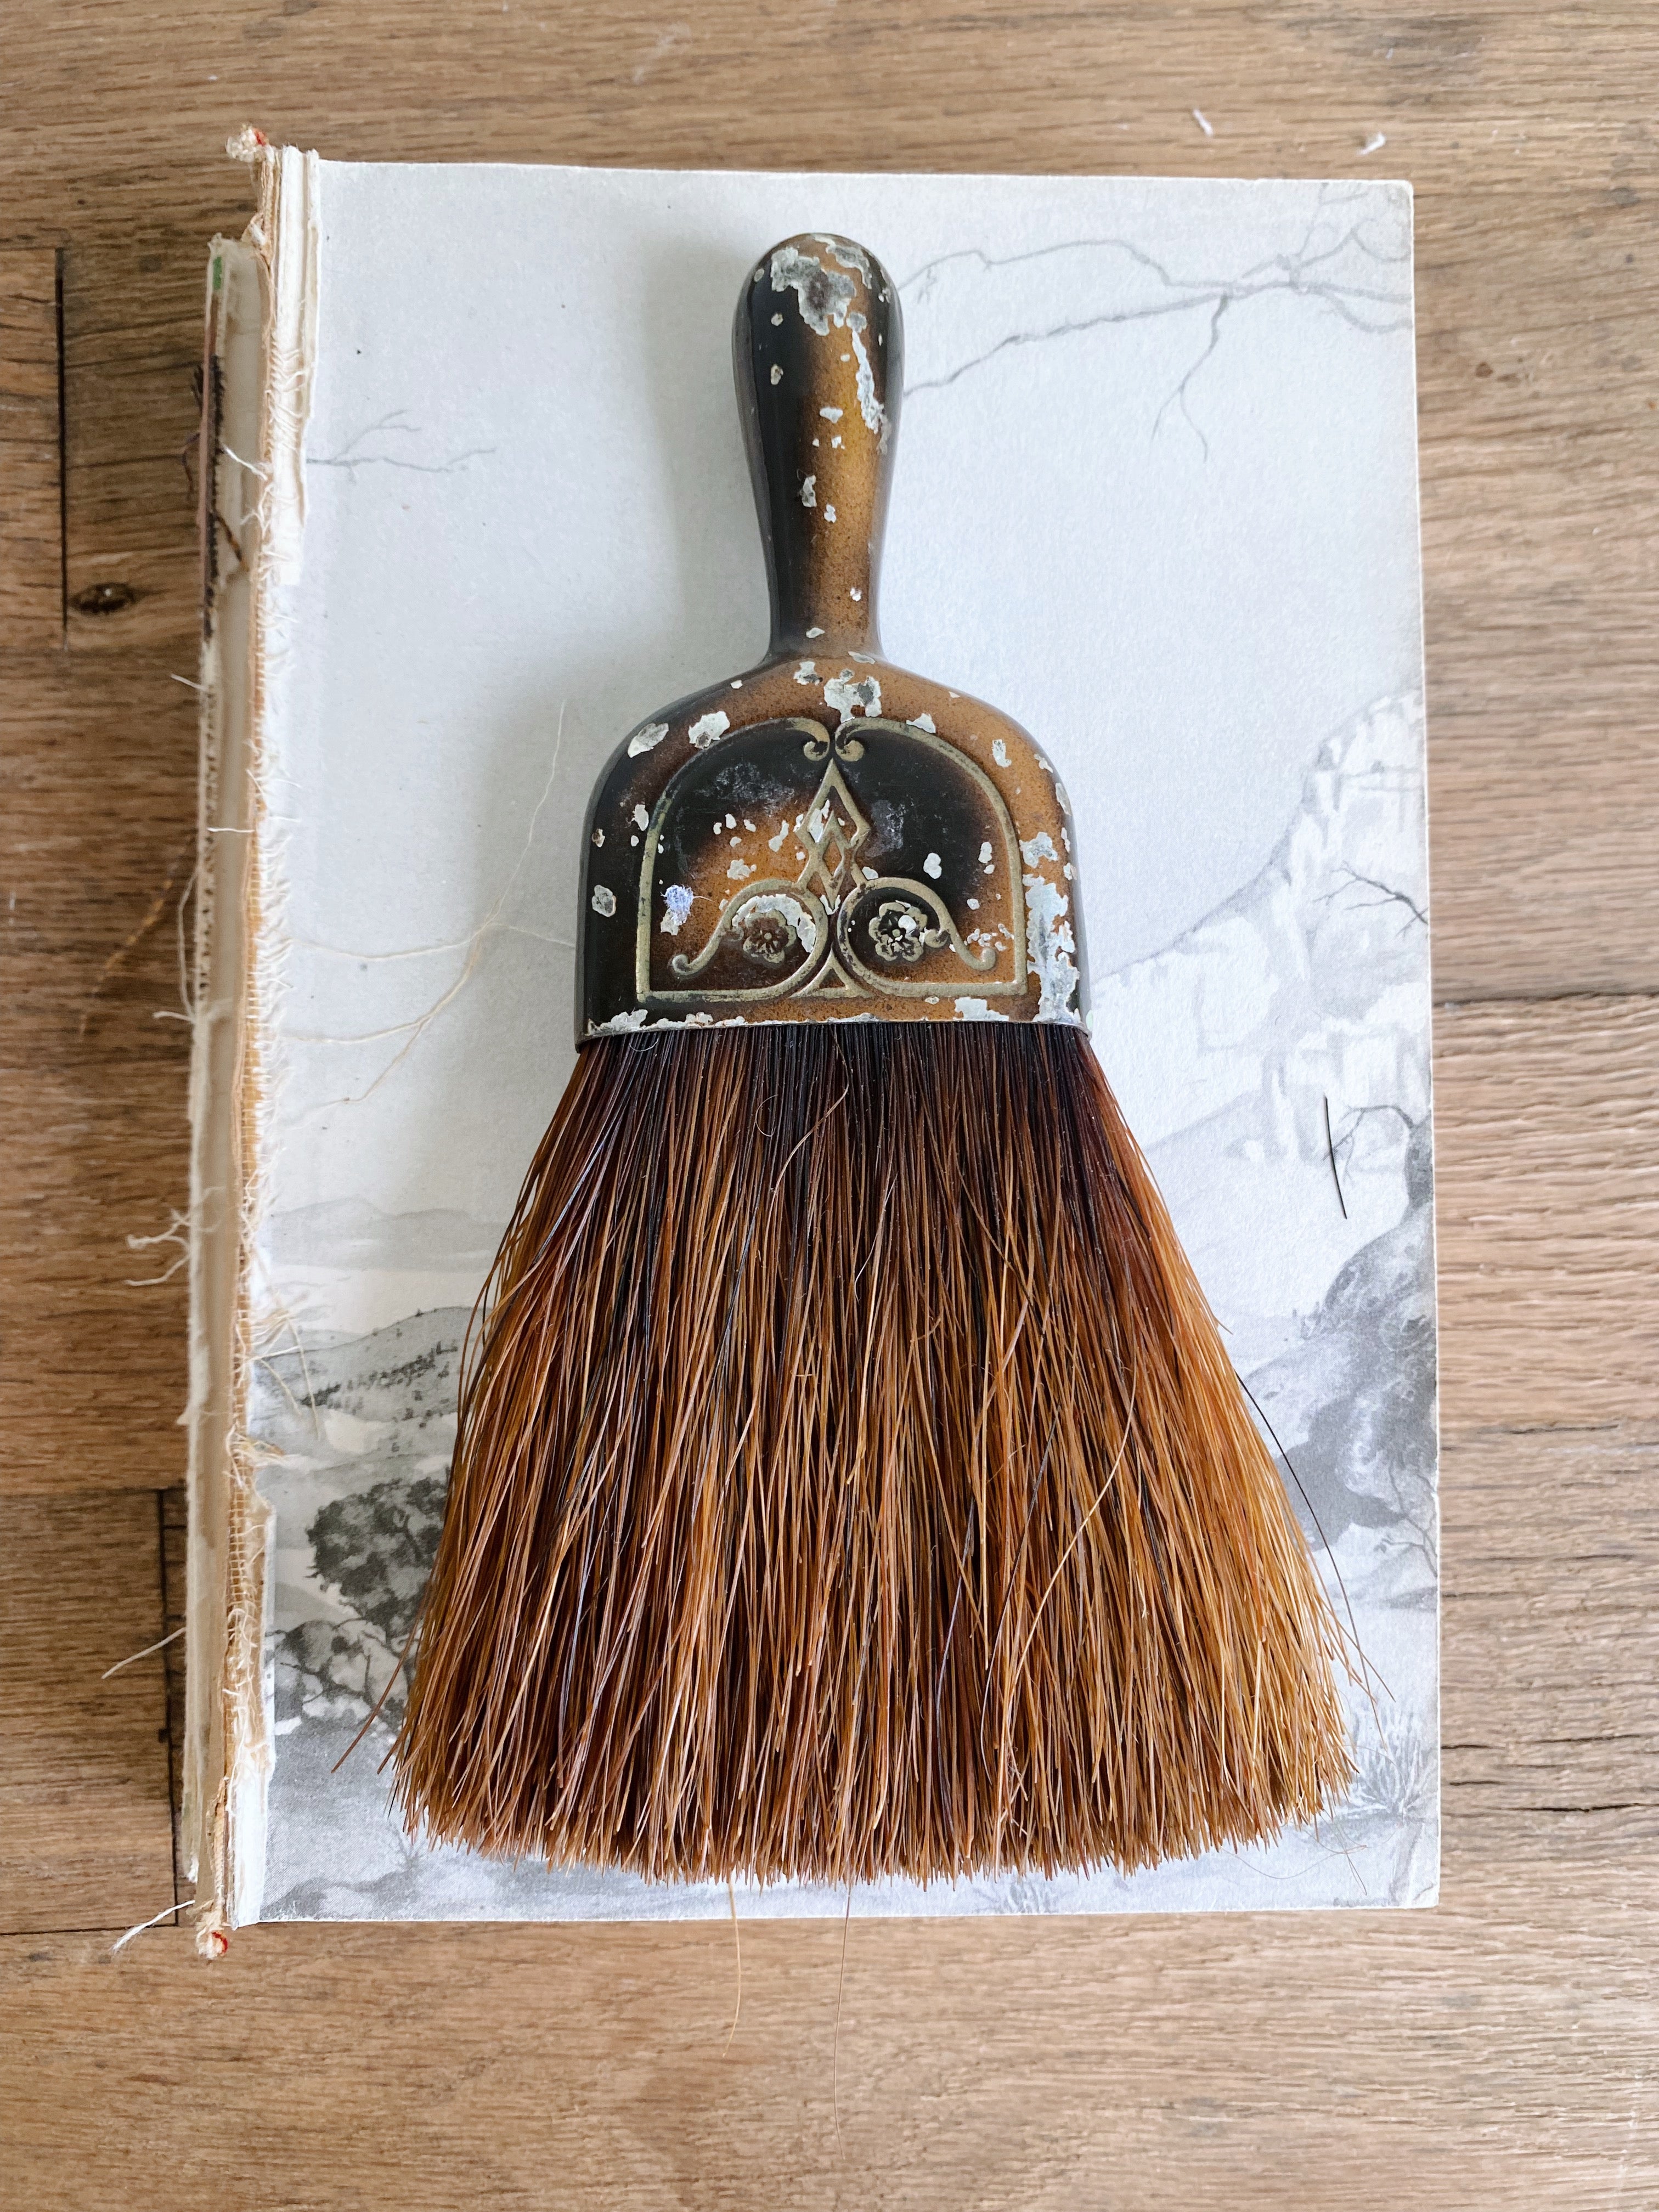 Vintage Broom